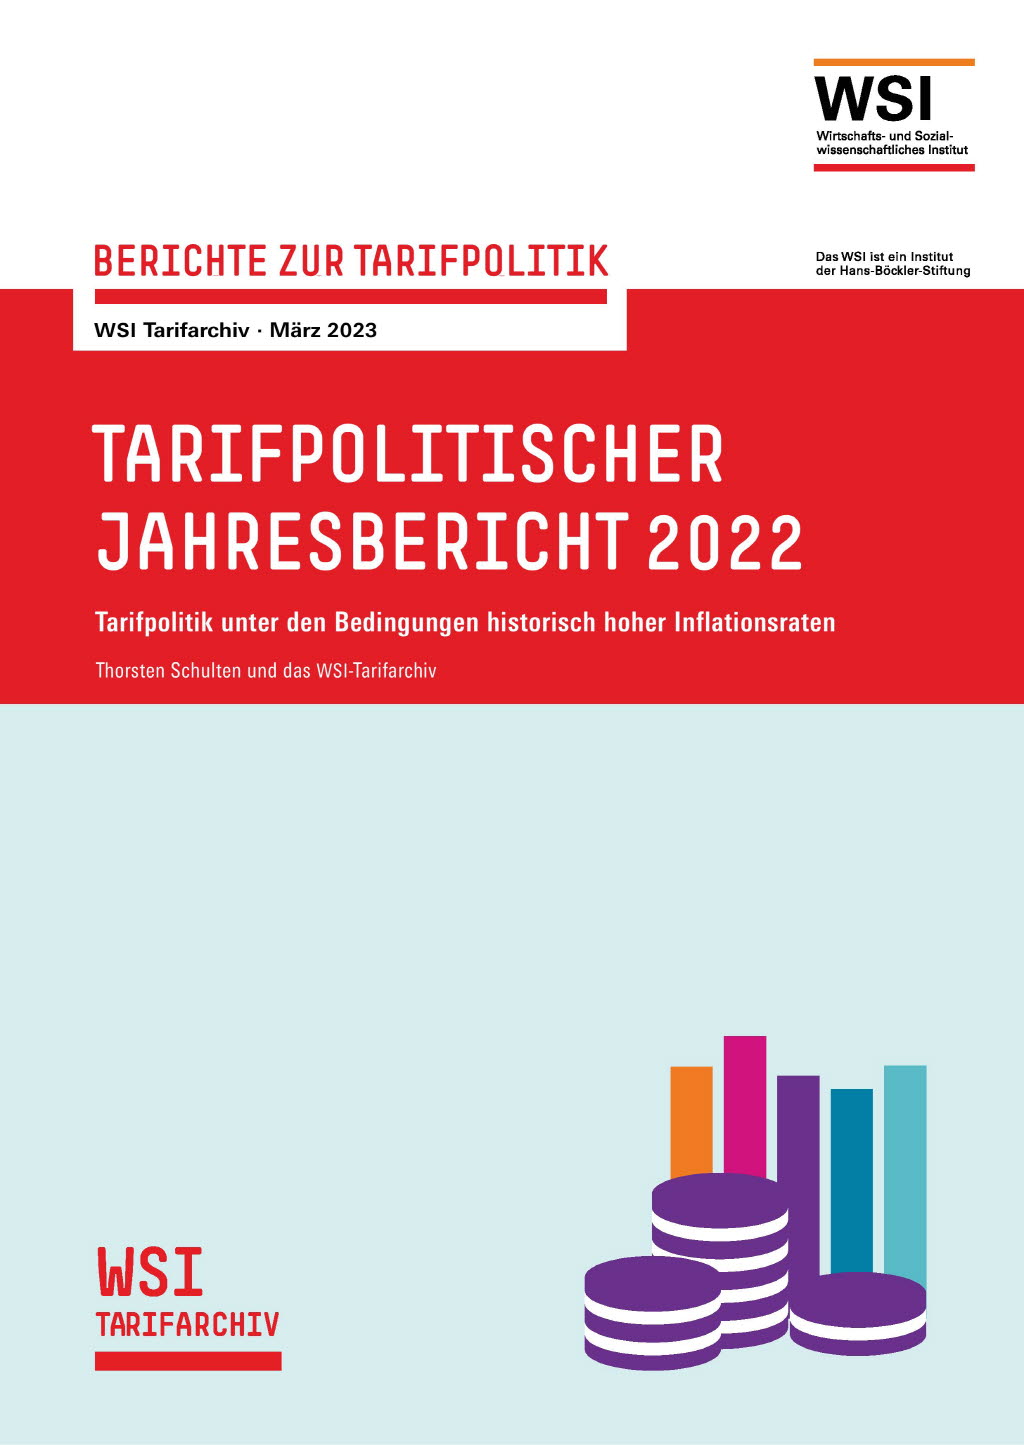 Tarifpolitischer Jahresbericht 2022